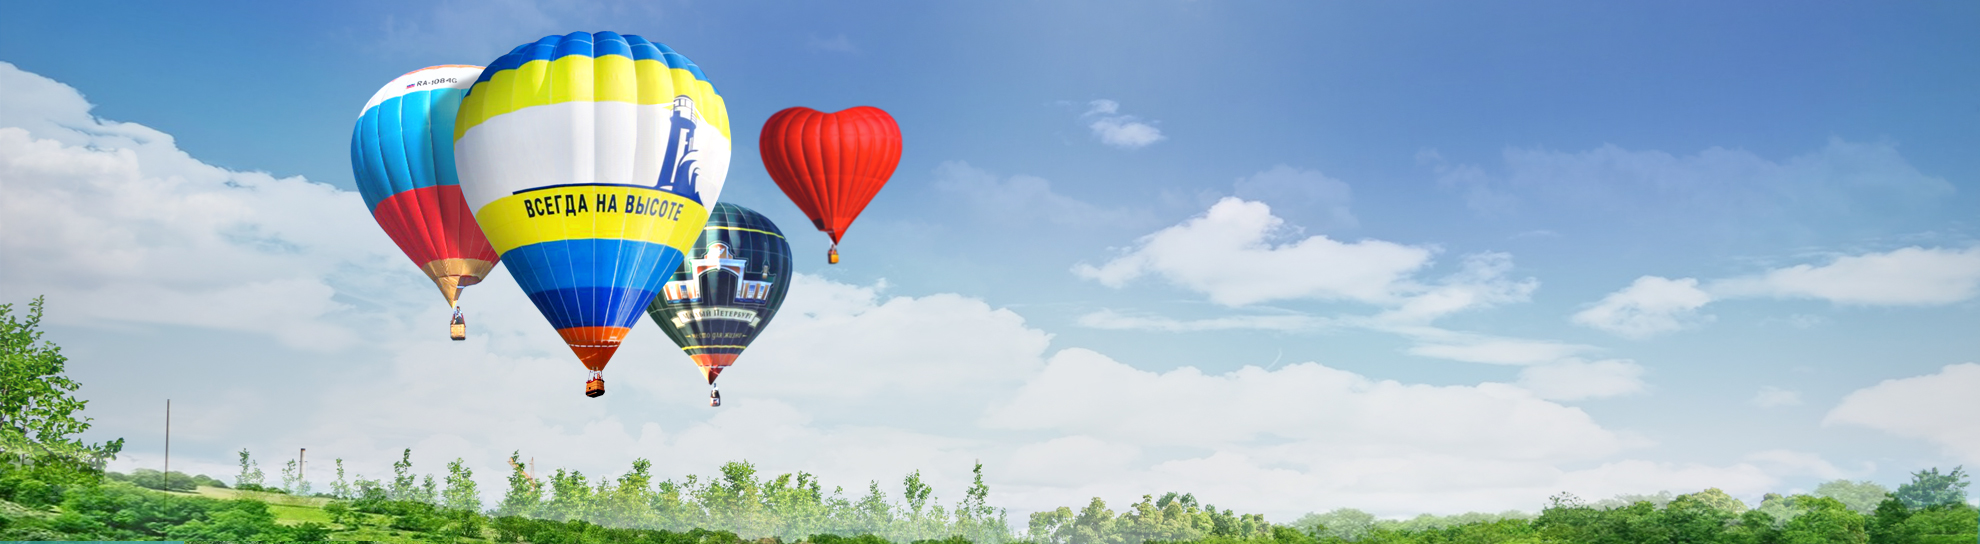 полетать на воздушном шаре где можно в екатеринбурге